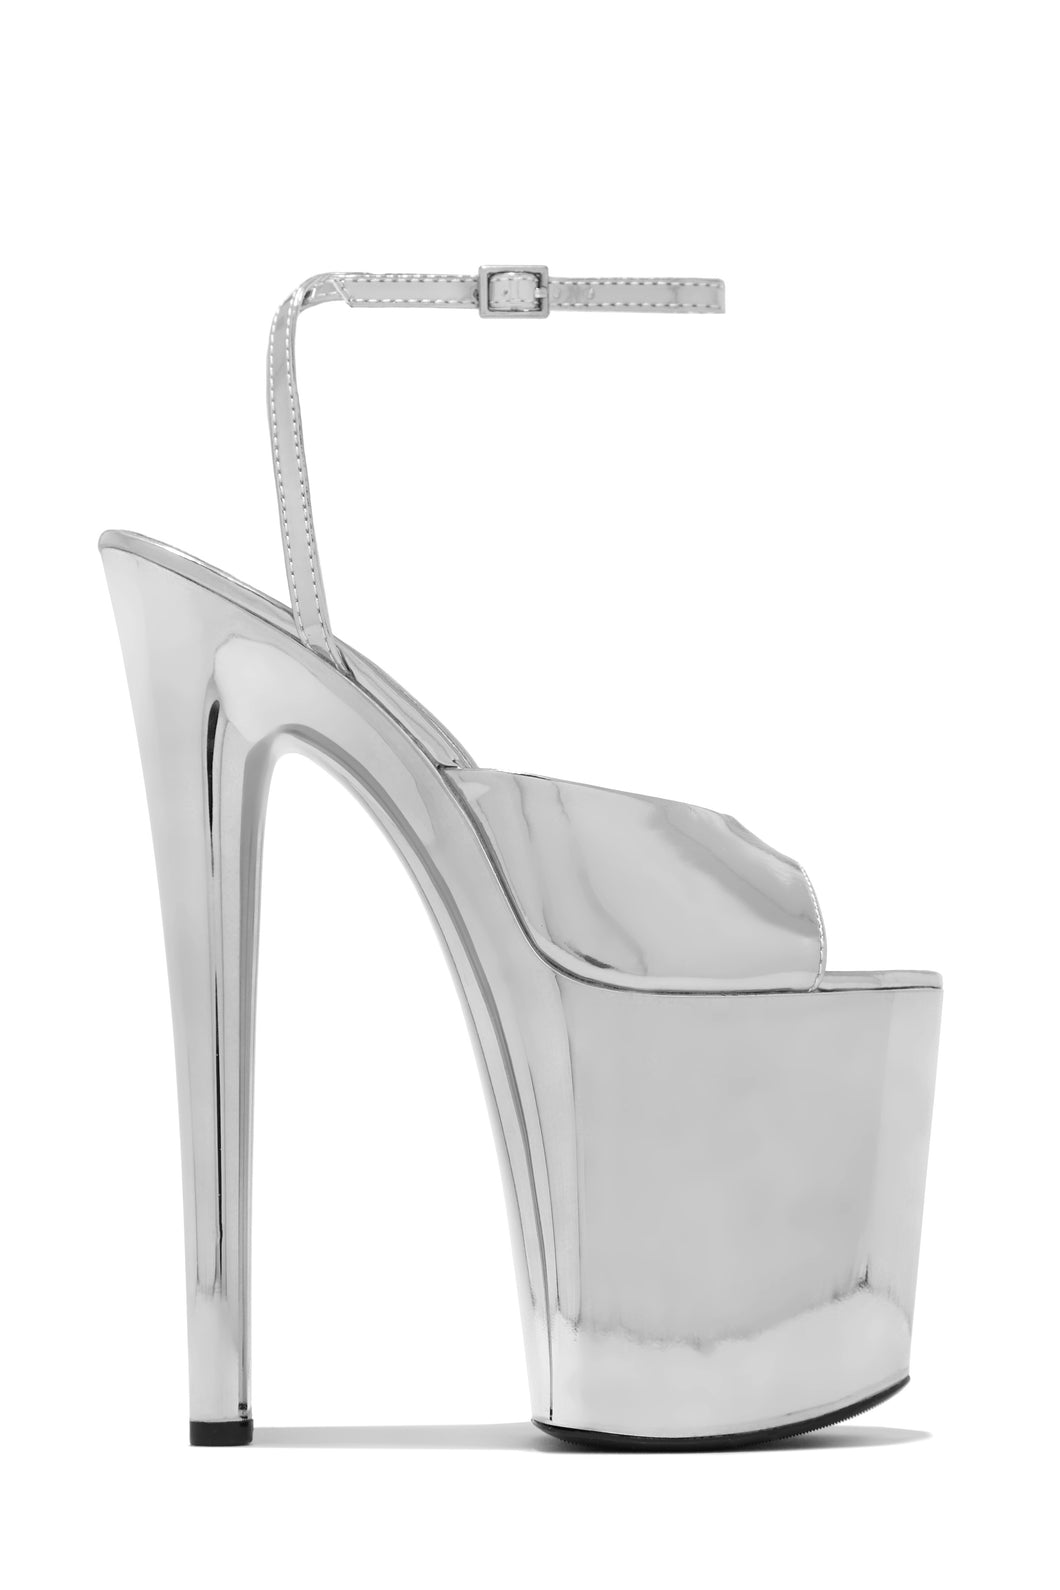 Sapphire Platform High Heels - Silver